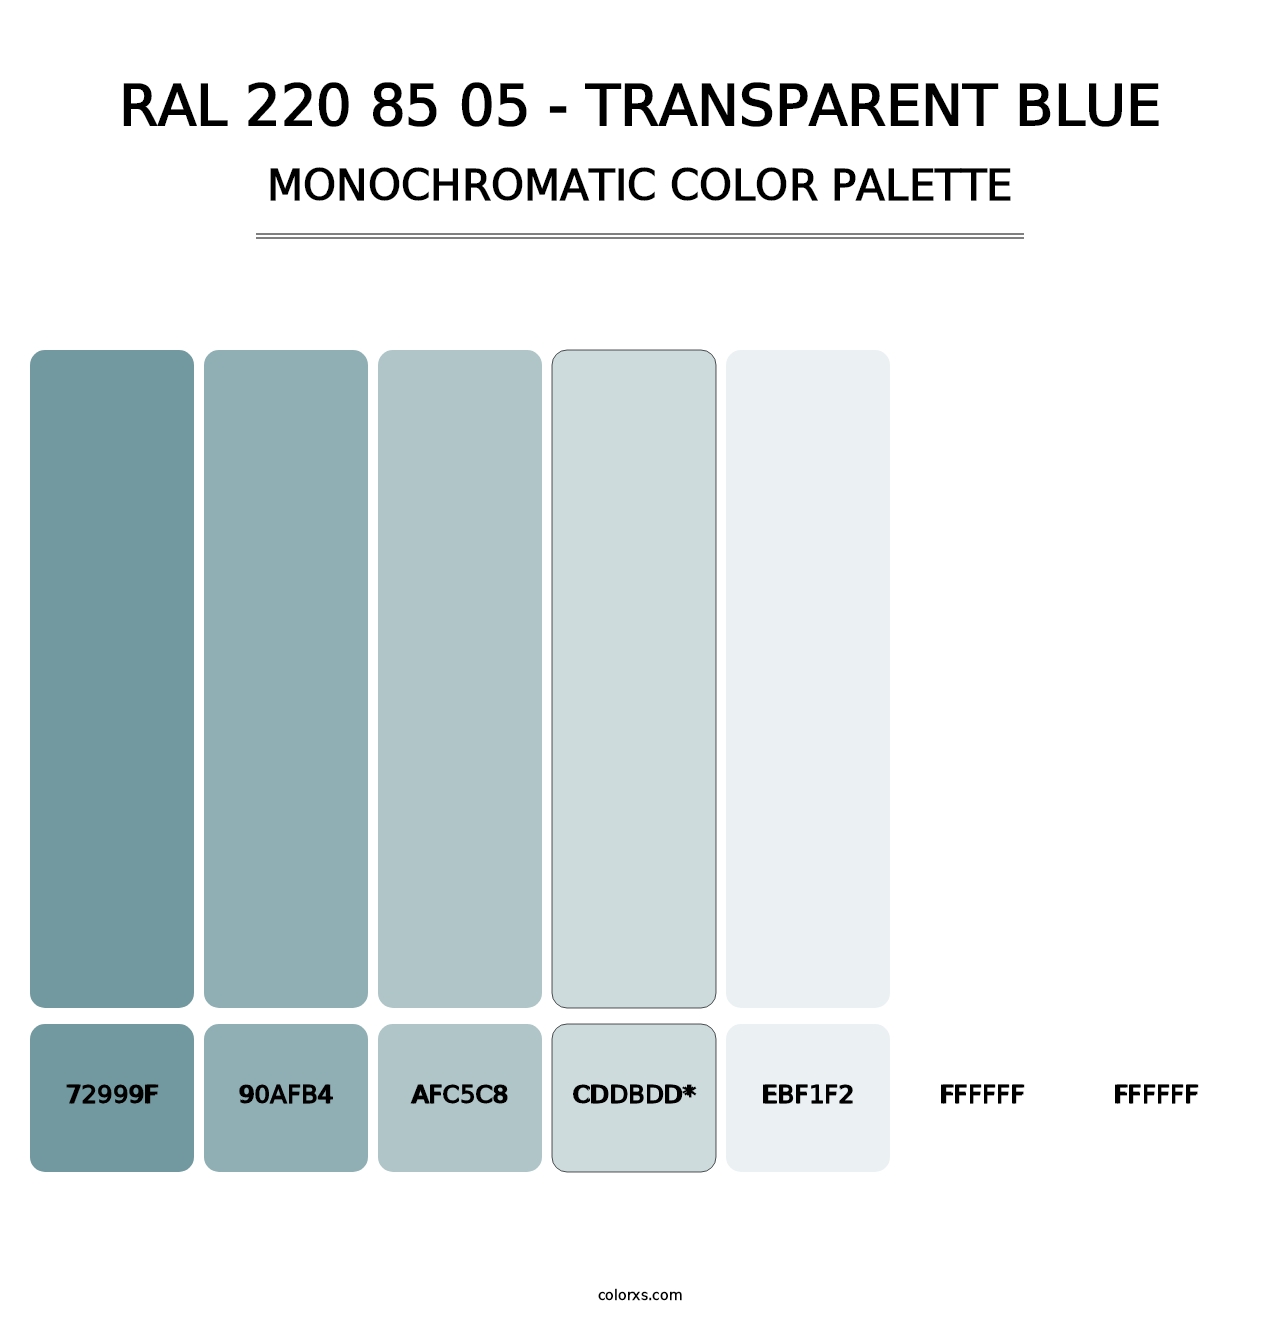 RAL 220 85 05 - Transparent Blue - Monochromatic Color Palette